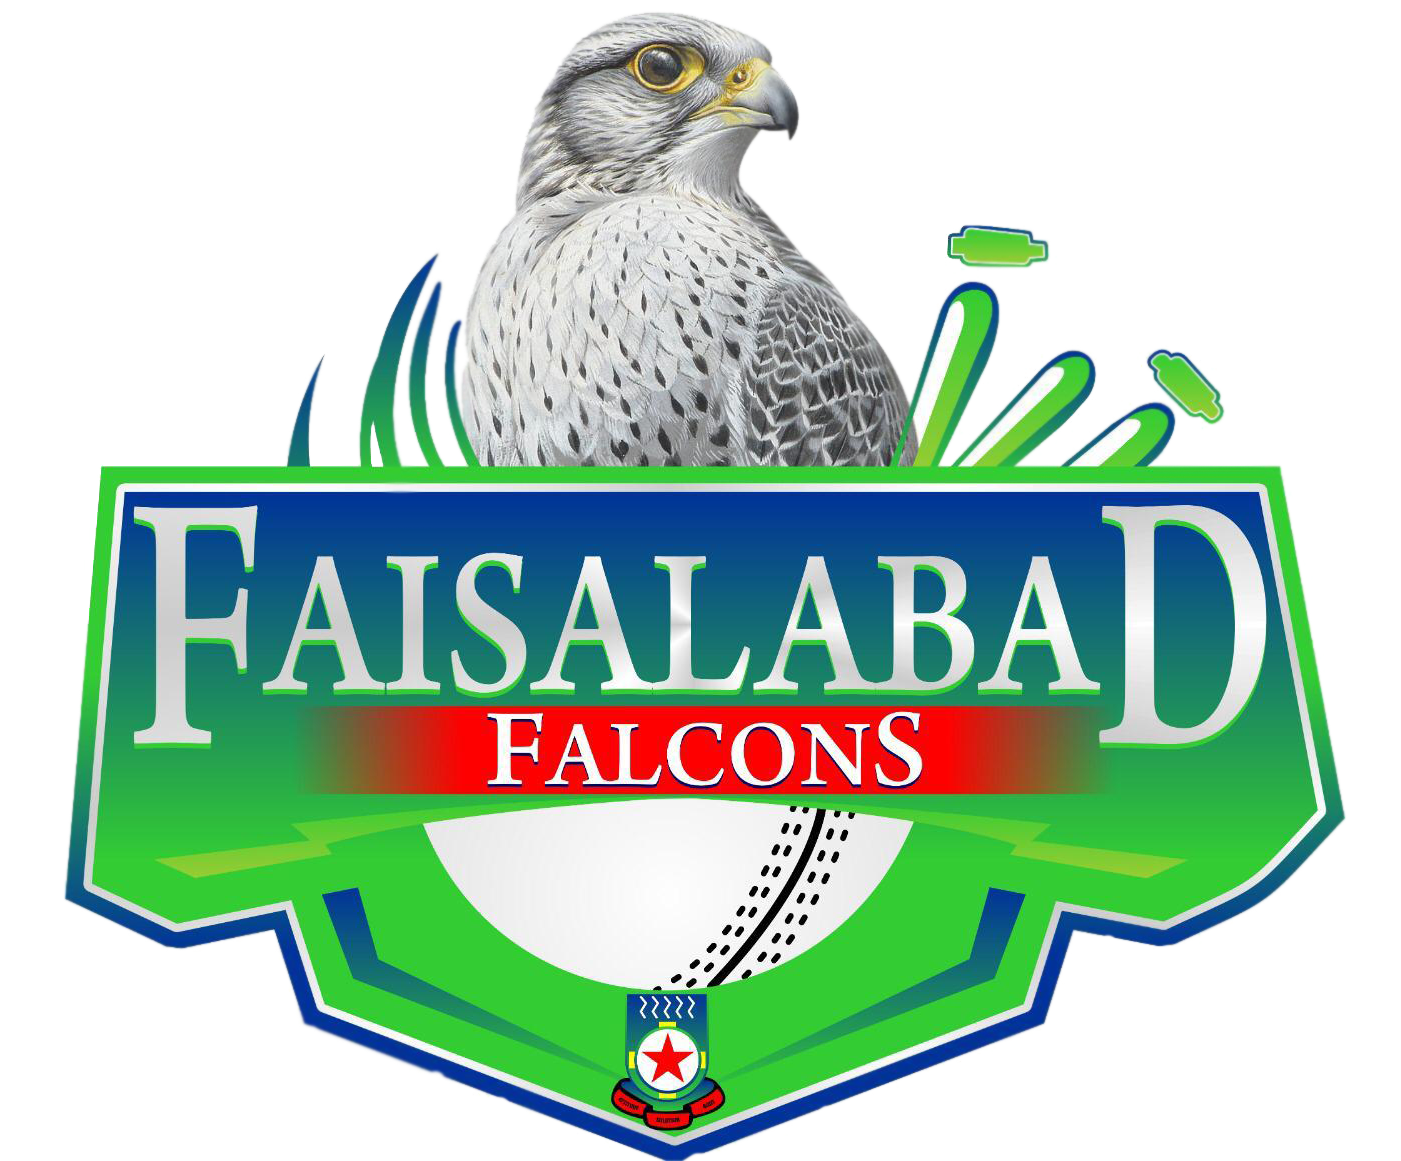 Faisalabad Falcons